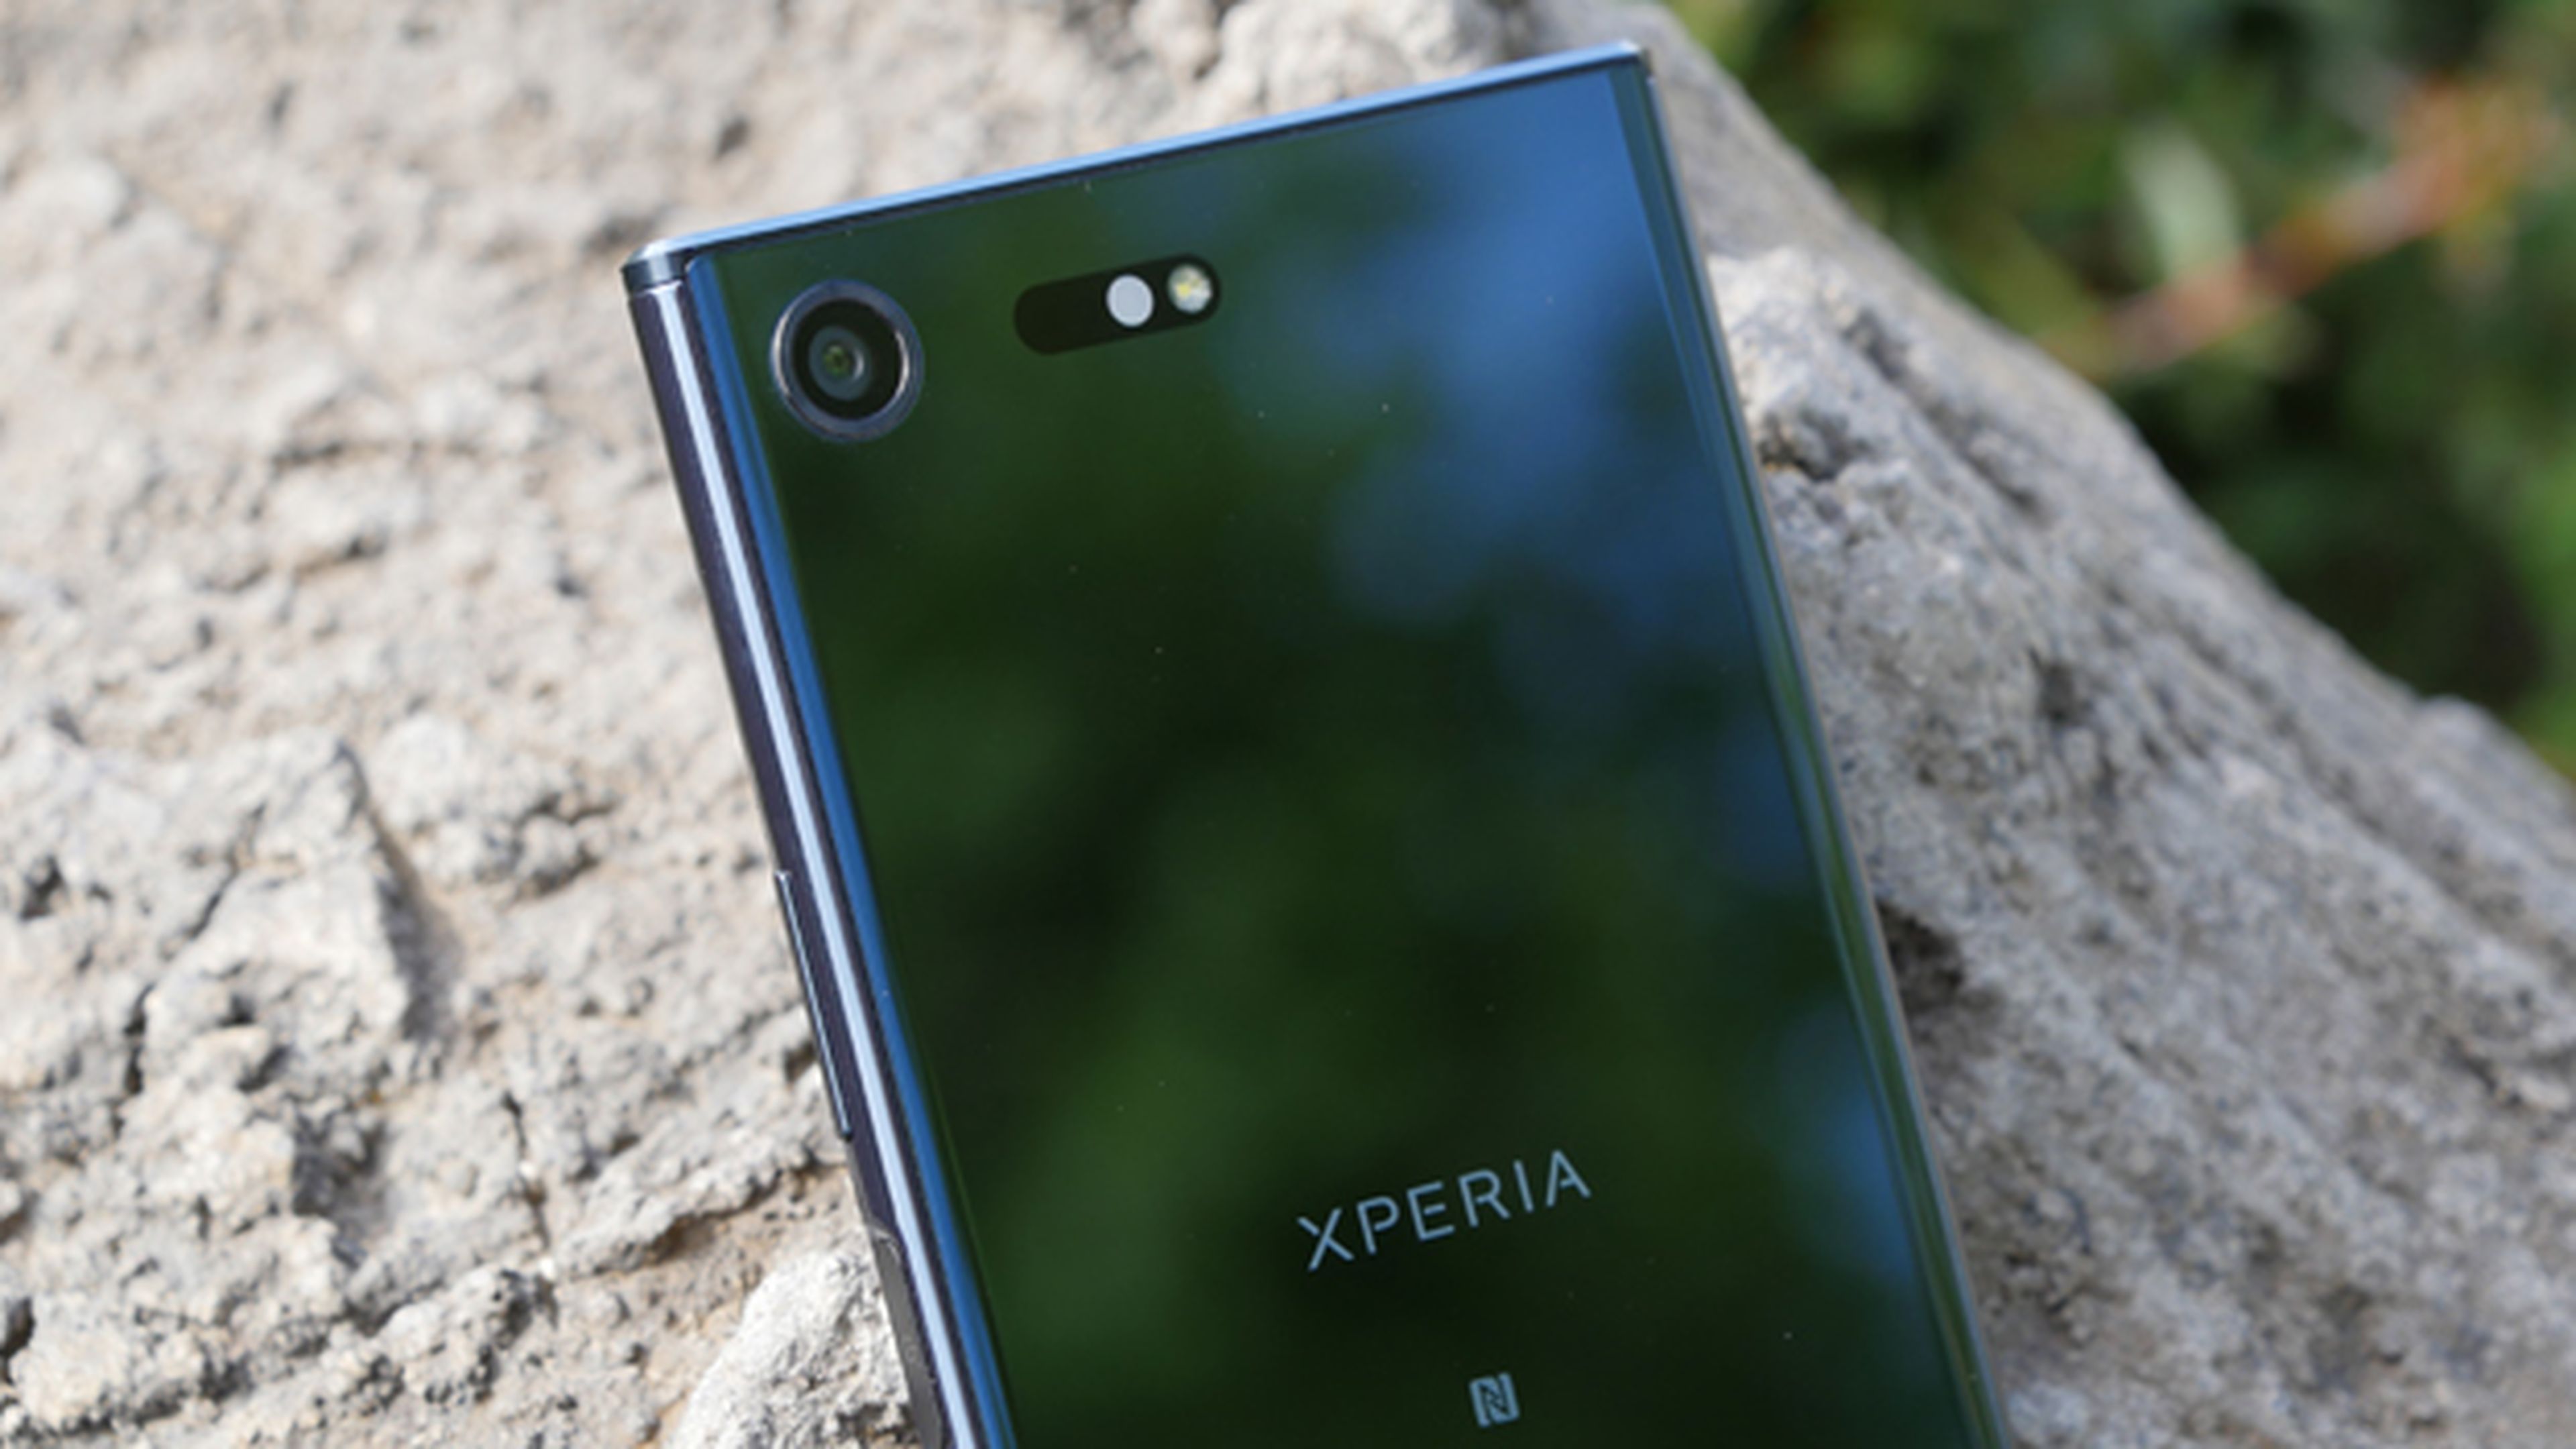 Nuestras opiniones sobre la cámara en la review de este móvil Xperia